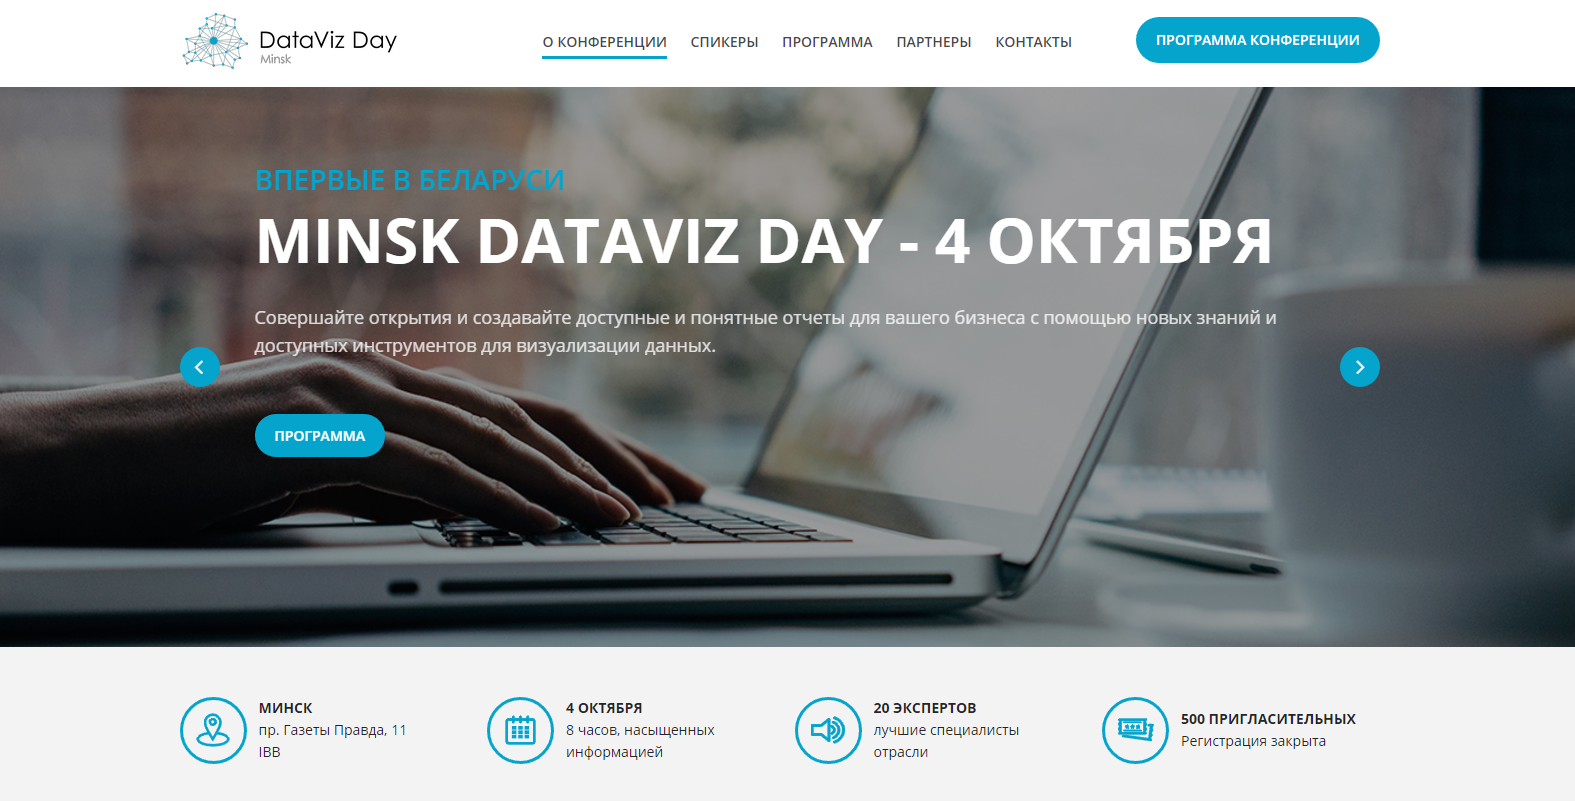 практическая конференция по анализу и визуализации данных minsk dataviz day